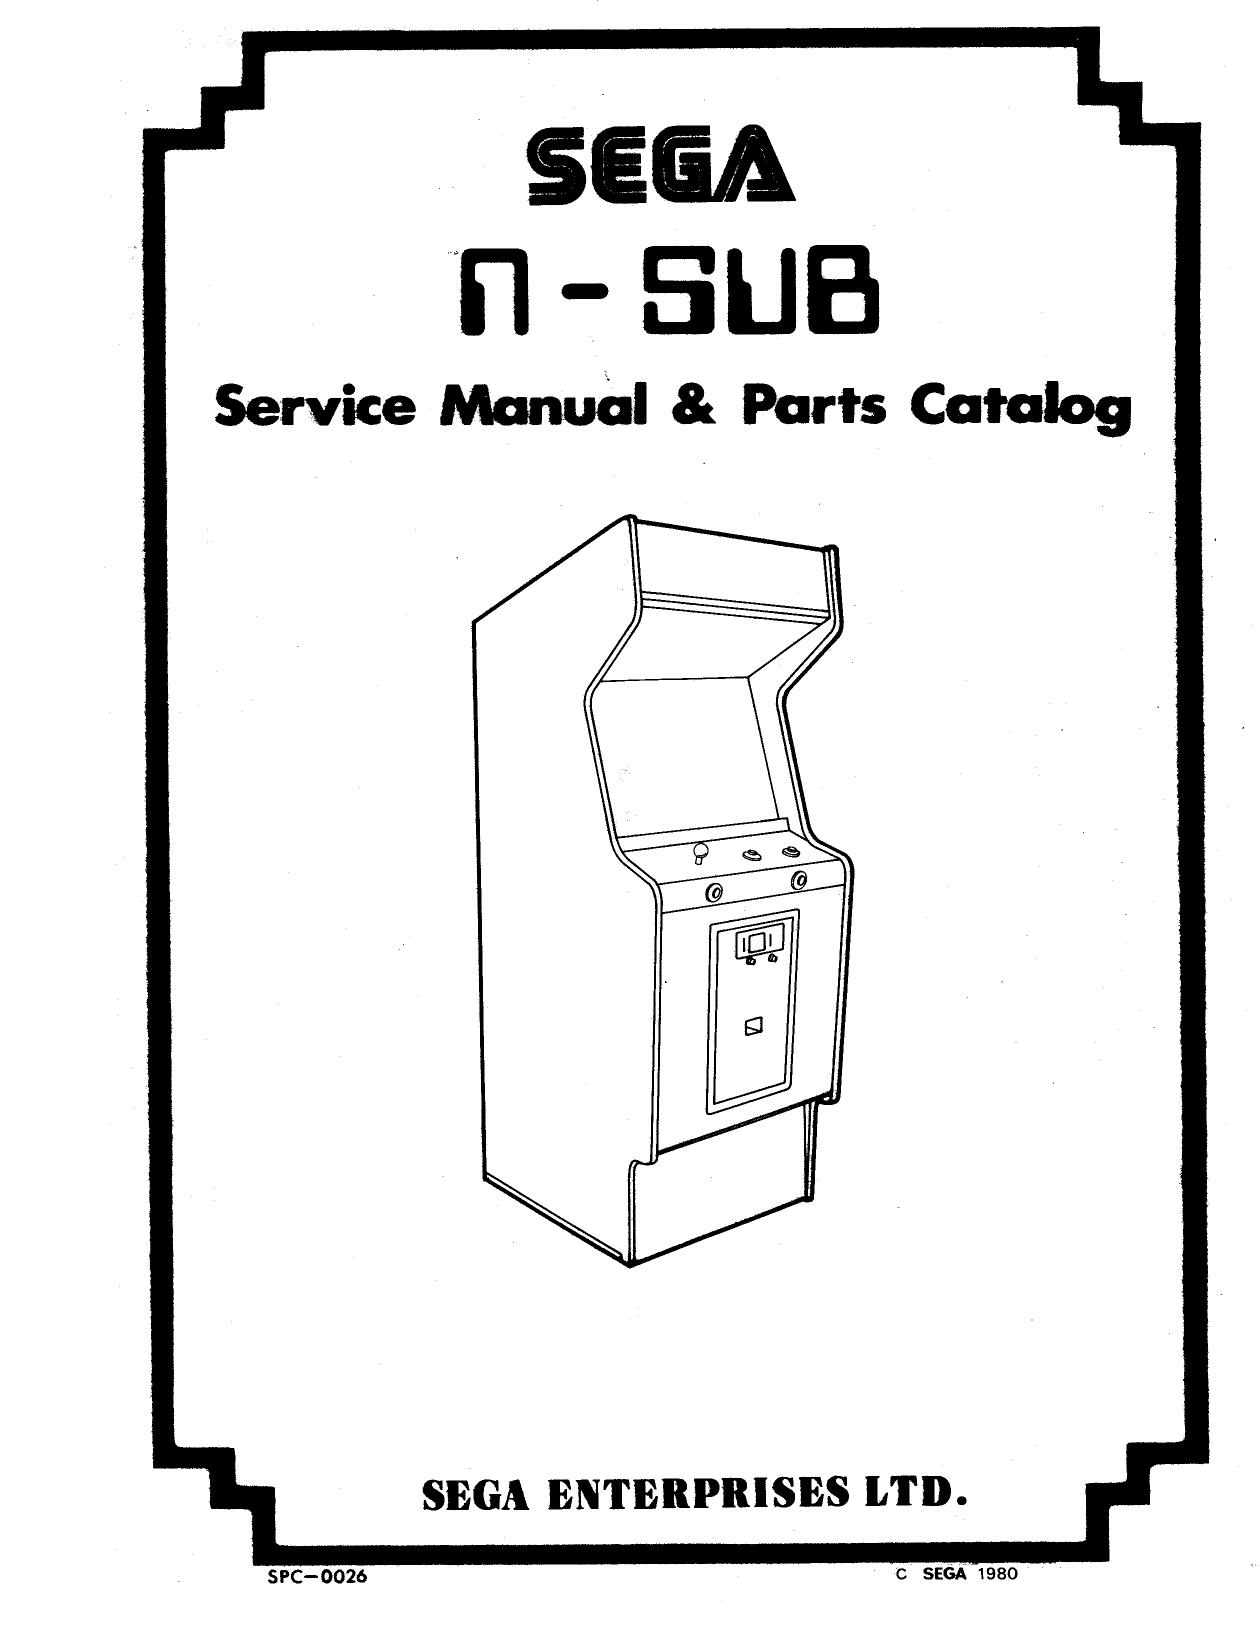 NSub Manual